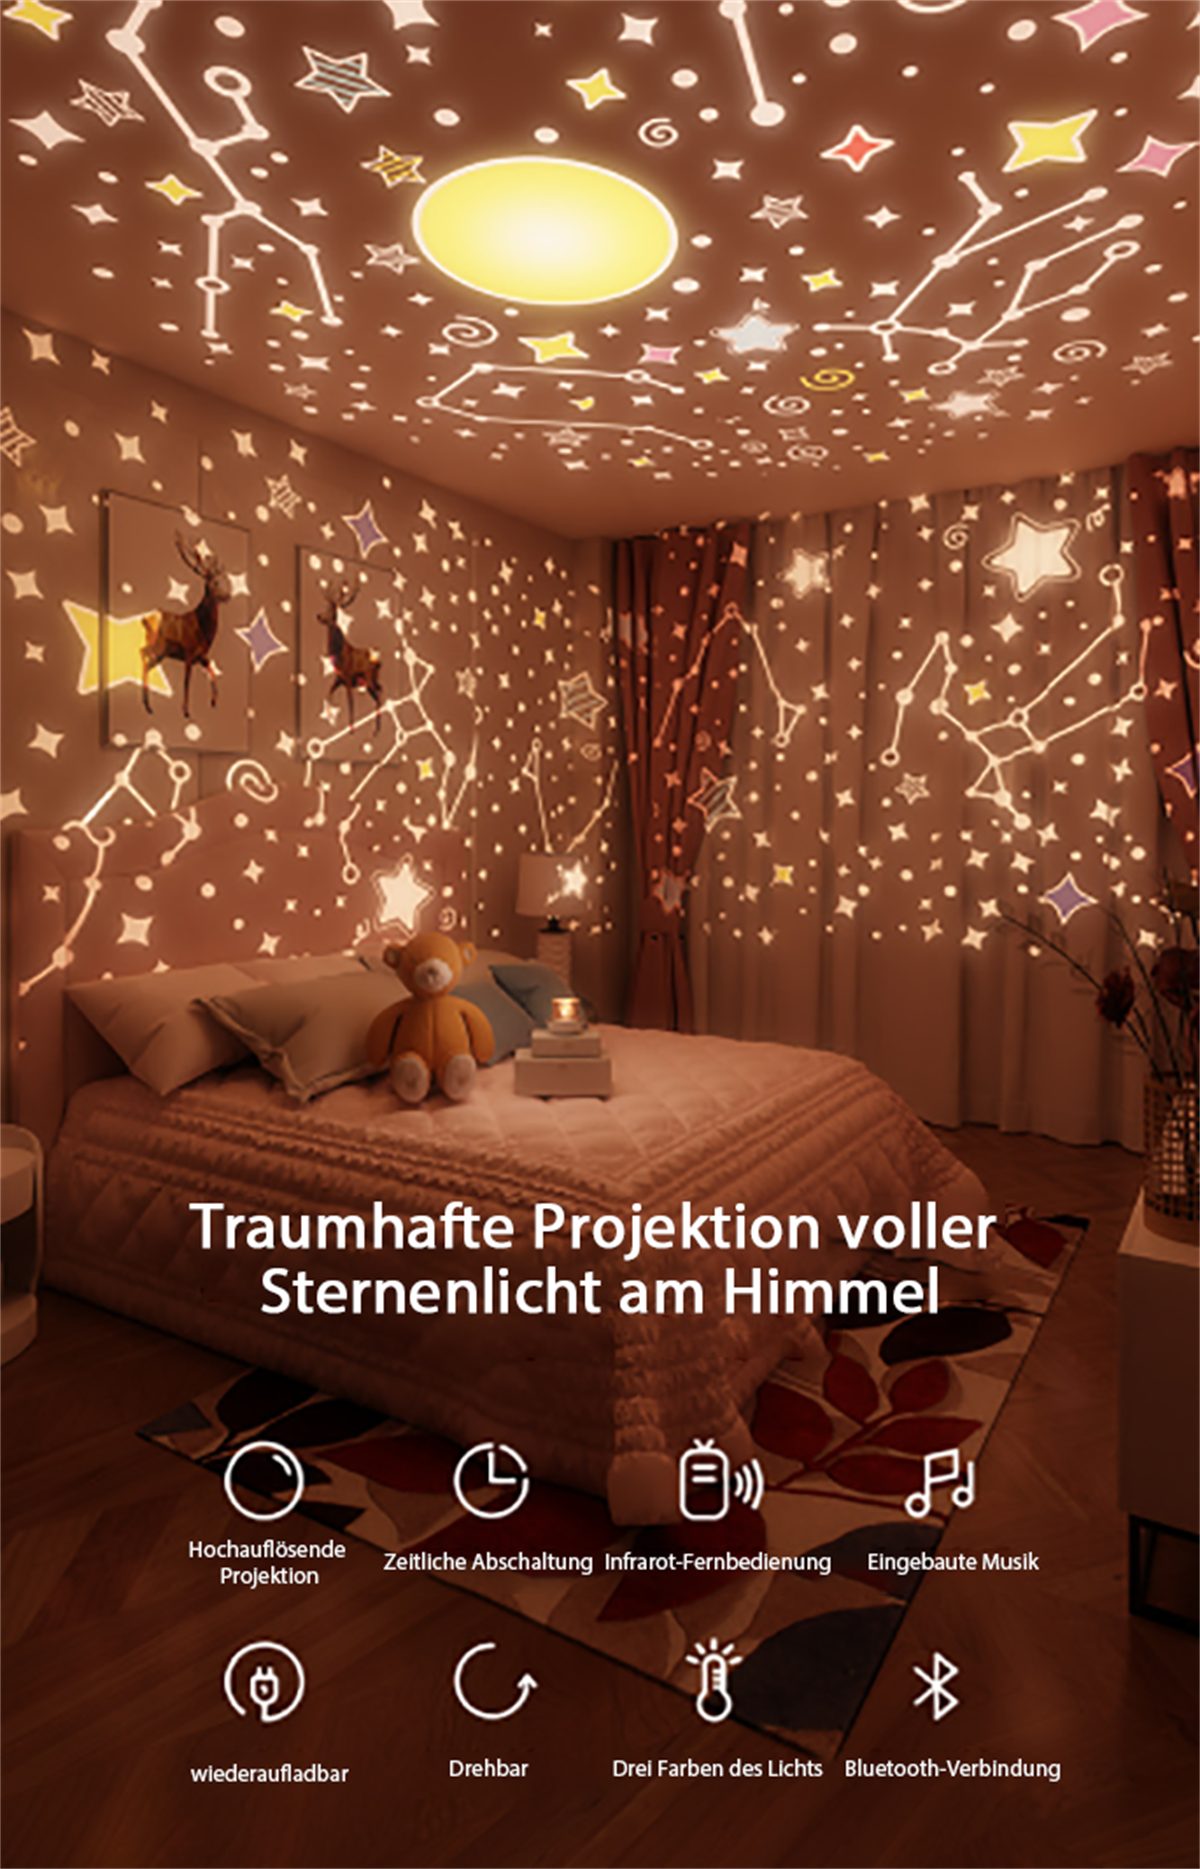 carefully selected LED Nachtlicht LED-Nachtlicht, Kaninchen-Sternenhimmel-Lichtprojektion, Fernbedienung